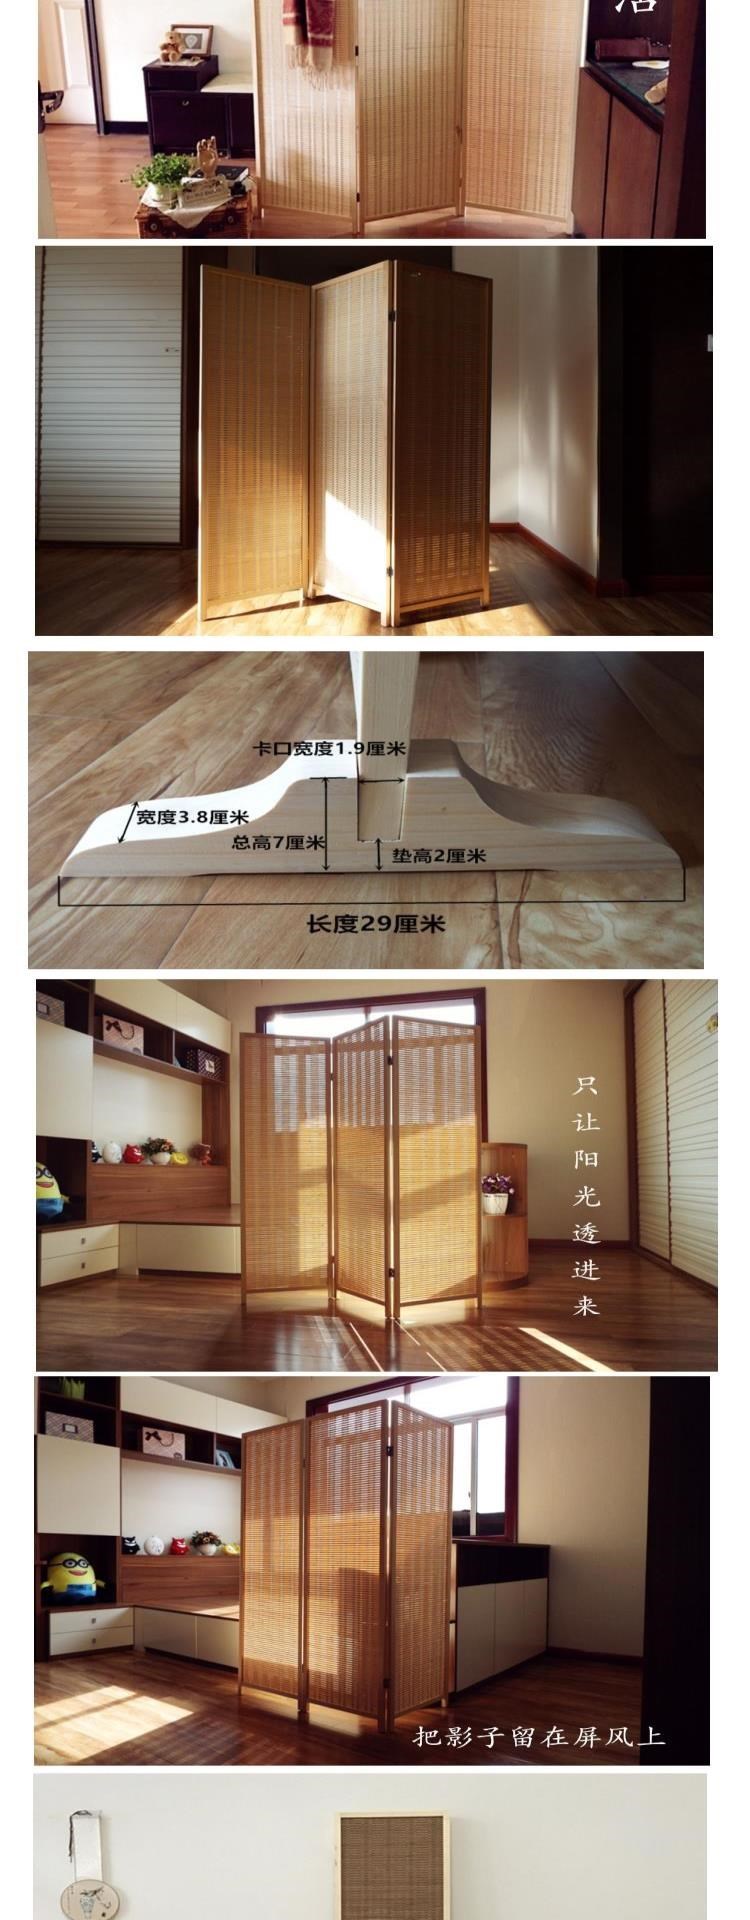 Vách ngăn màn hình gấp màn phong cách Nhật Bản lối vào nhà hàng khách hàng vách ngăn màn hình gấp màn ban công Màn tre đan bằng gỗ trong nhà - Màn hình / Cửa sổ